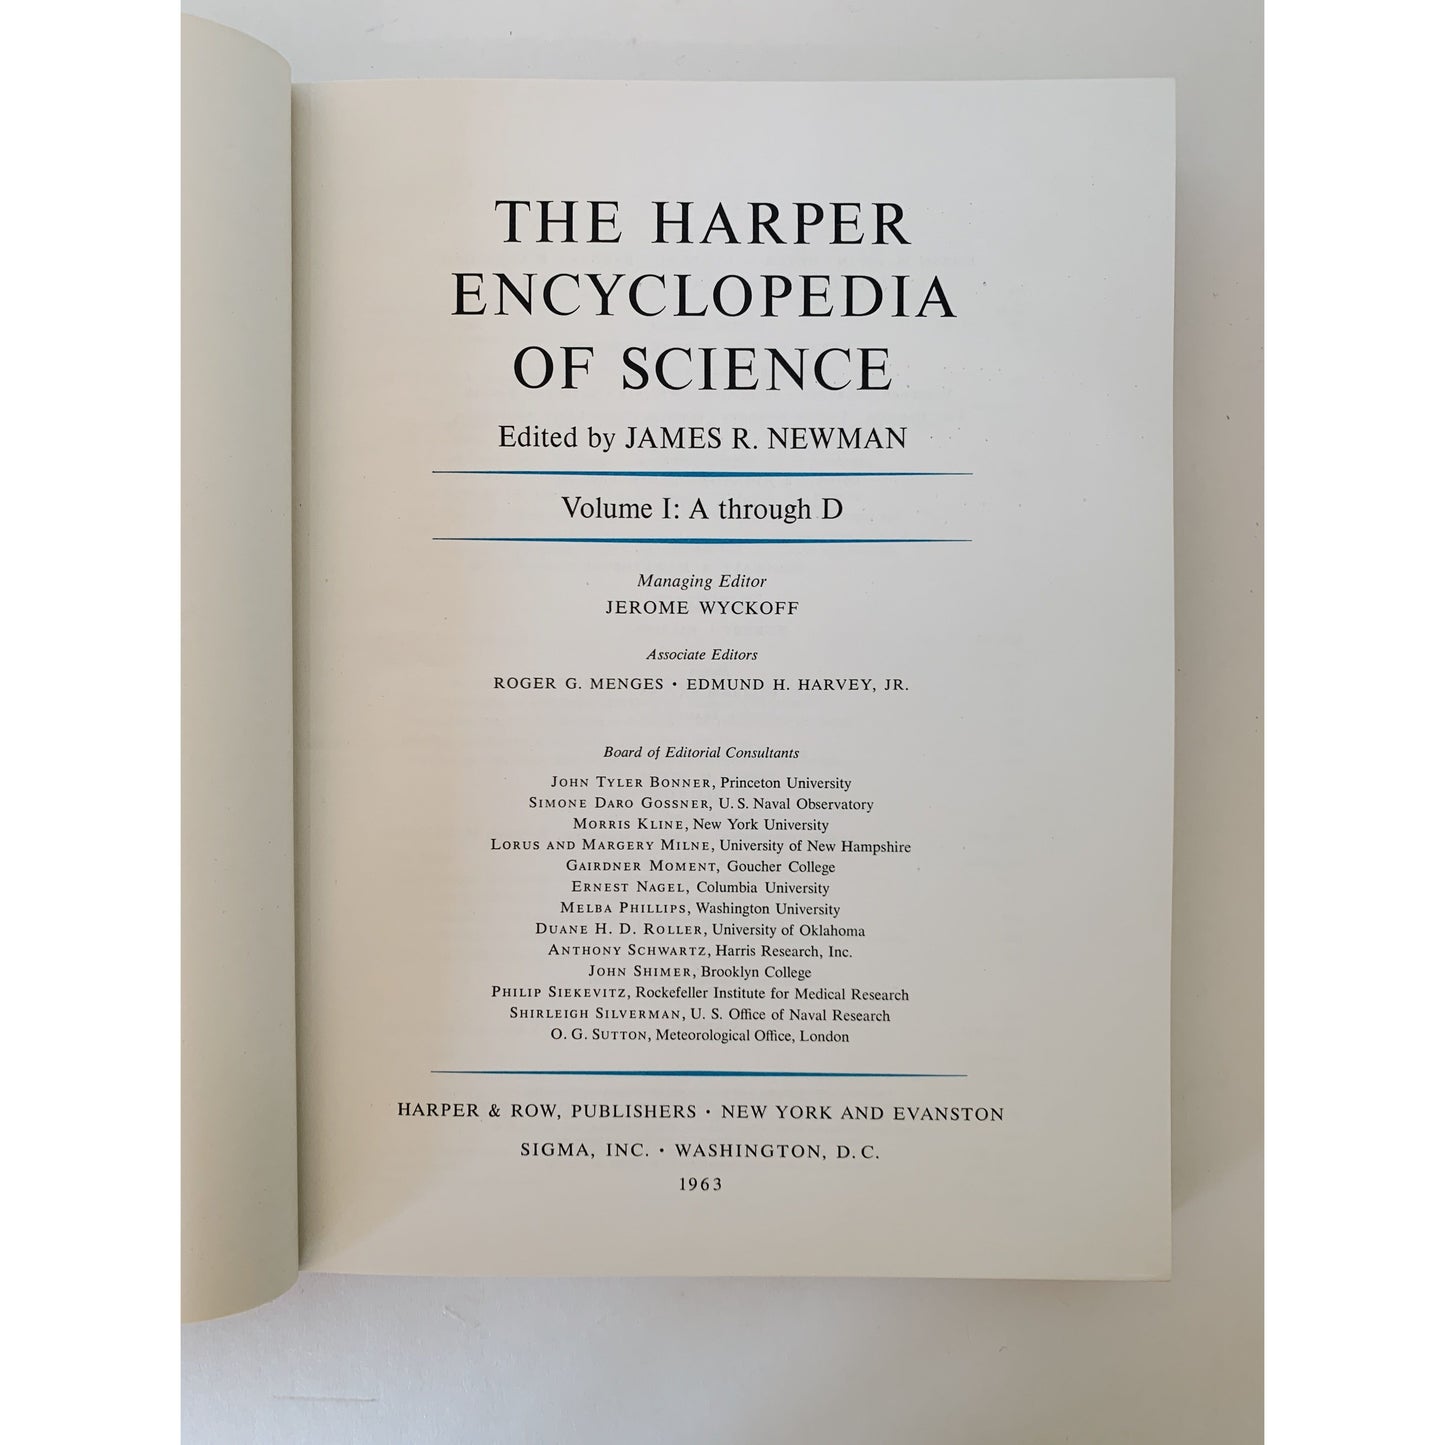 The Harper Encyclopedia of Science, 1963 Hardcovers in Slipcase